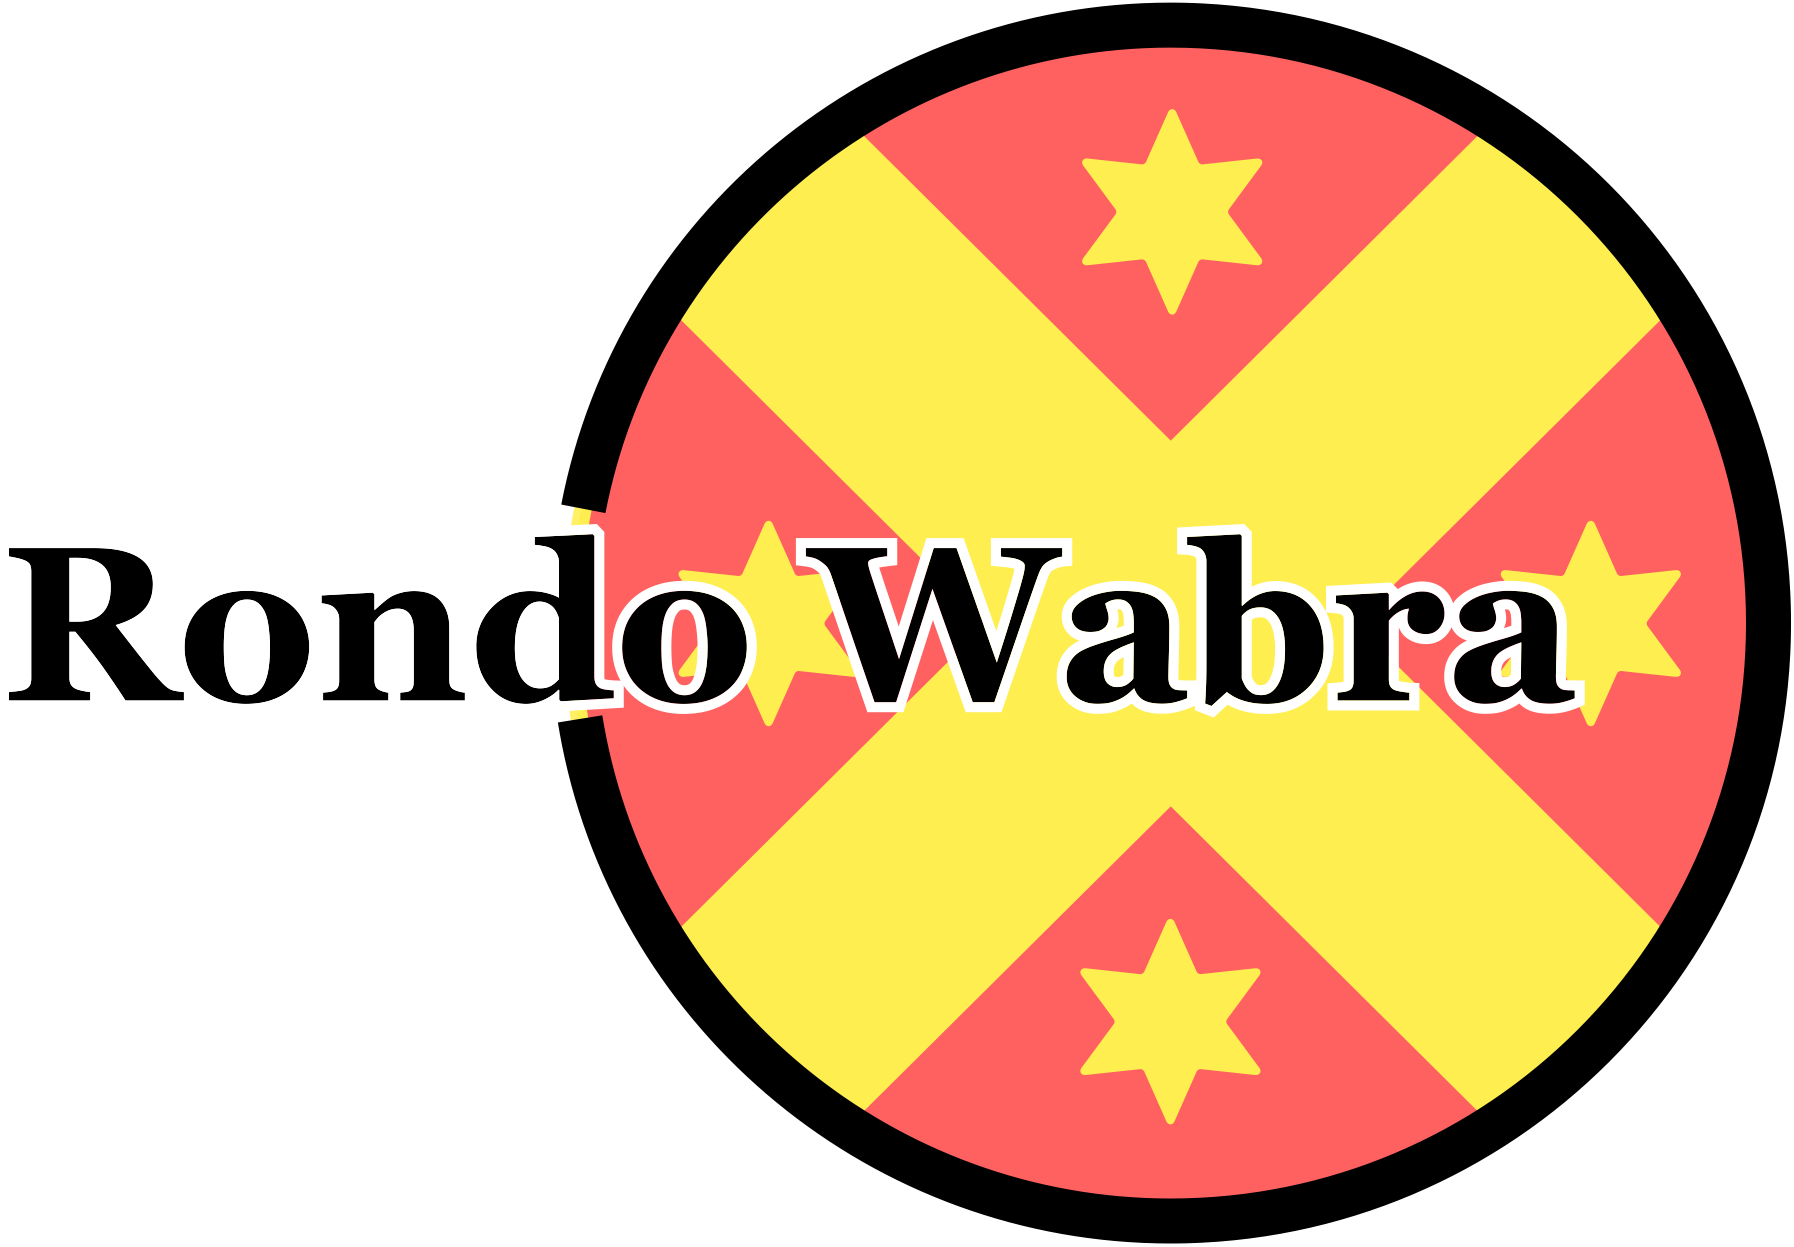 Rondo Wabra